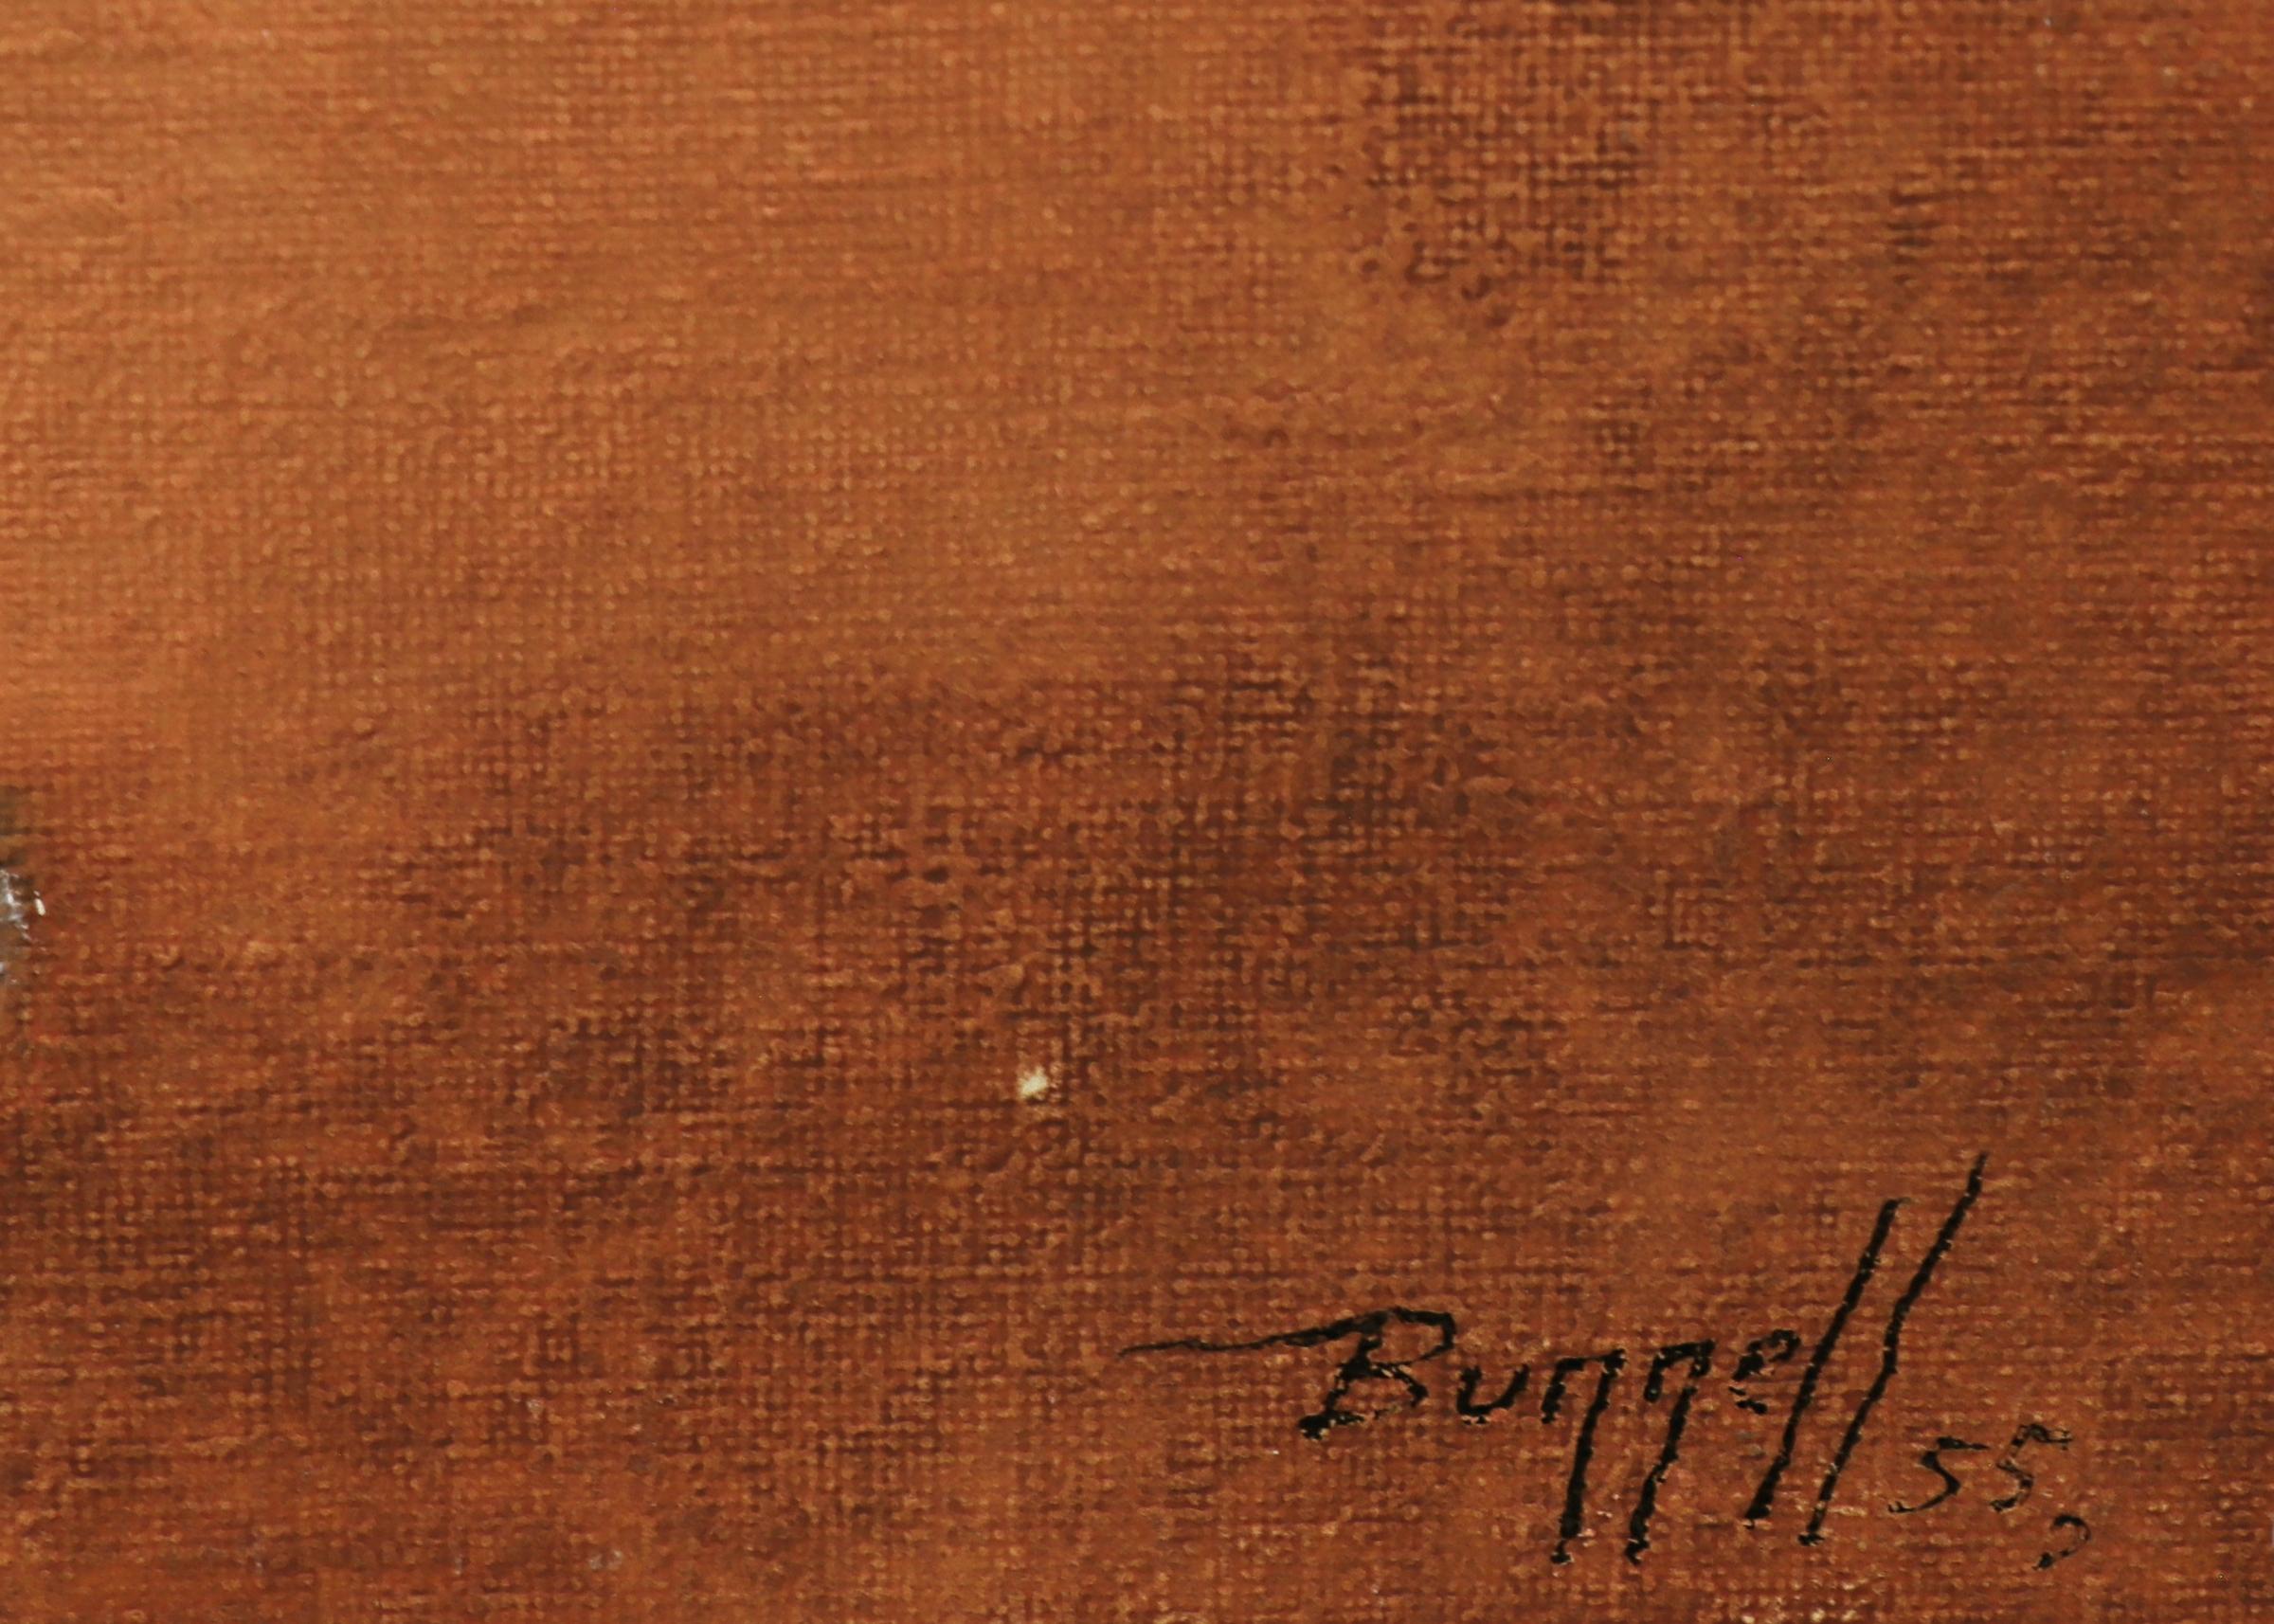 Abstraktes expressionistisches Ölgemälde auf Karton aus dem Jahr 1955 von Charles Bunnell. Abstrakte Formen in Schichten von Salbeigrün, Hellblau, Braun, Gold und Schwarz. Präsentiert in einem maßgeschneiderten Rahmen, Außenmaße messen 16 ¼ x 20 ¼